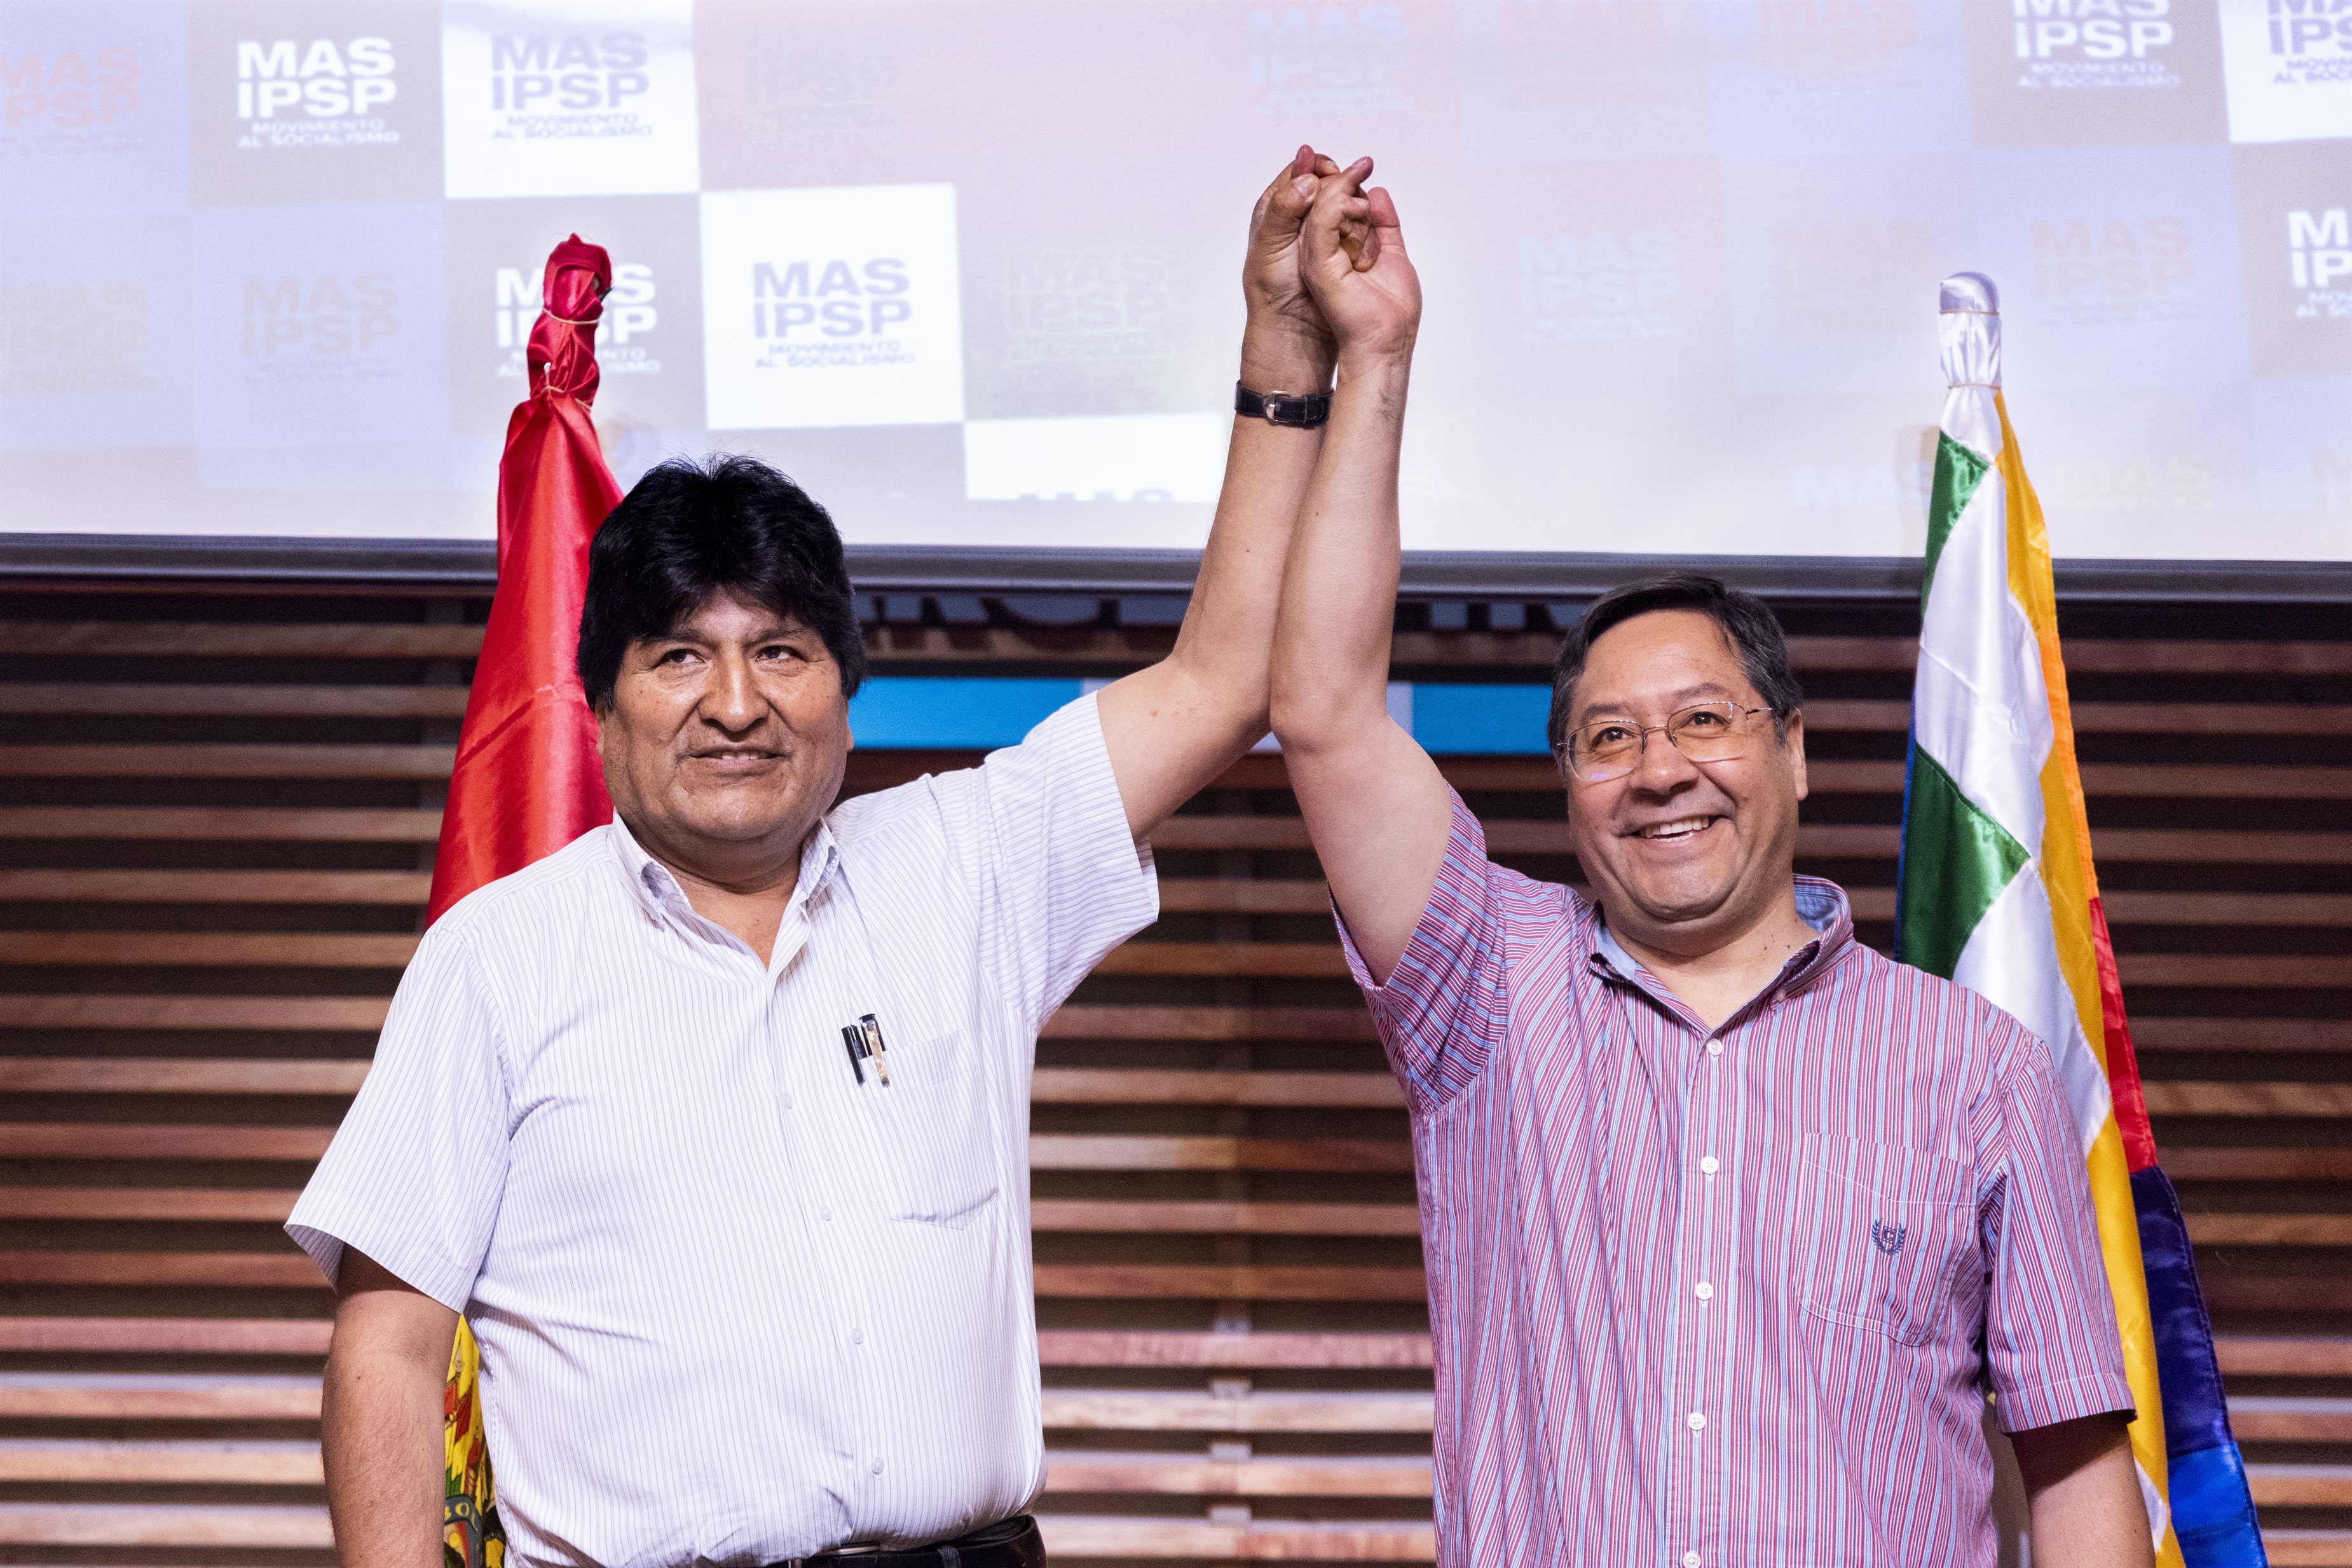 El expresidente de Bolivia Evo Morales y su sucesor Luis Arce (JULIETA FERRARIO / ZUMA PRESS / CONTACTOPHOTO)
